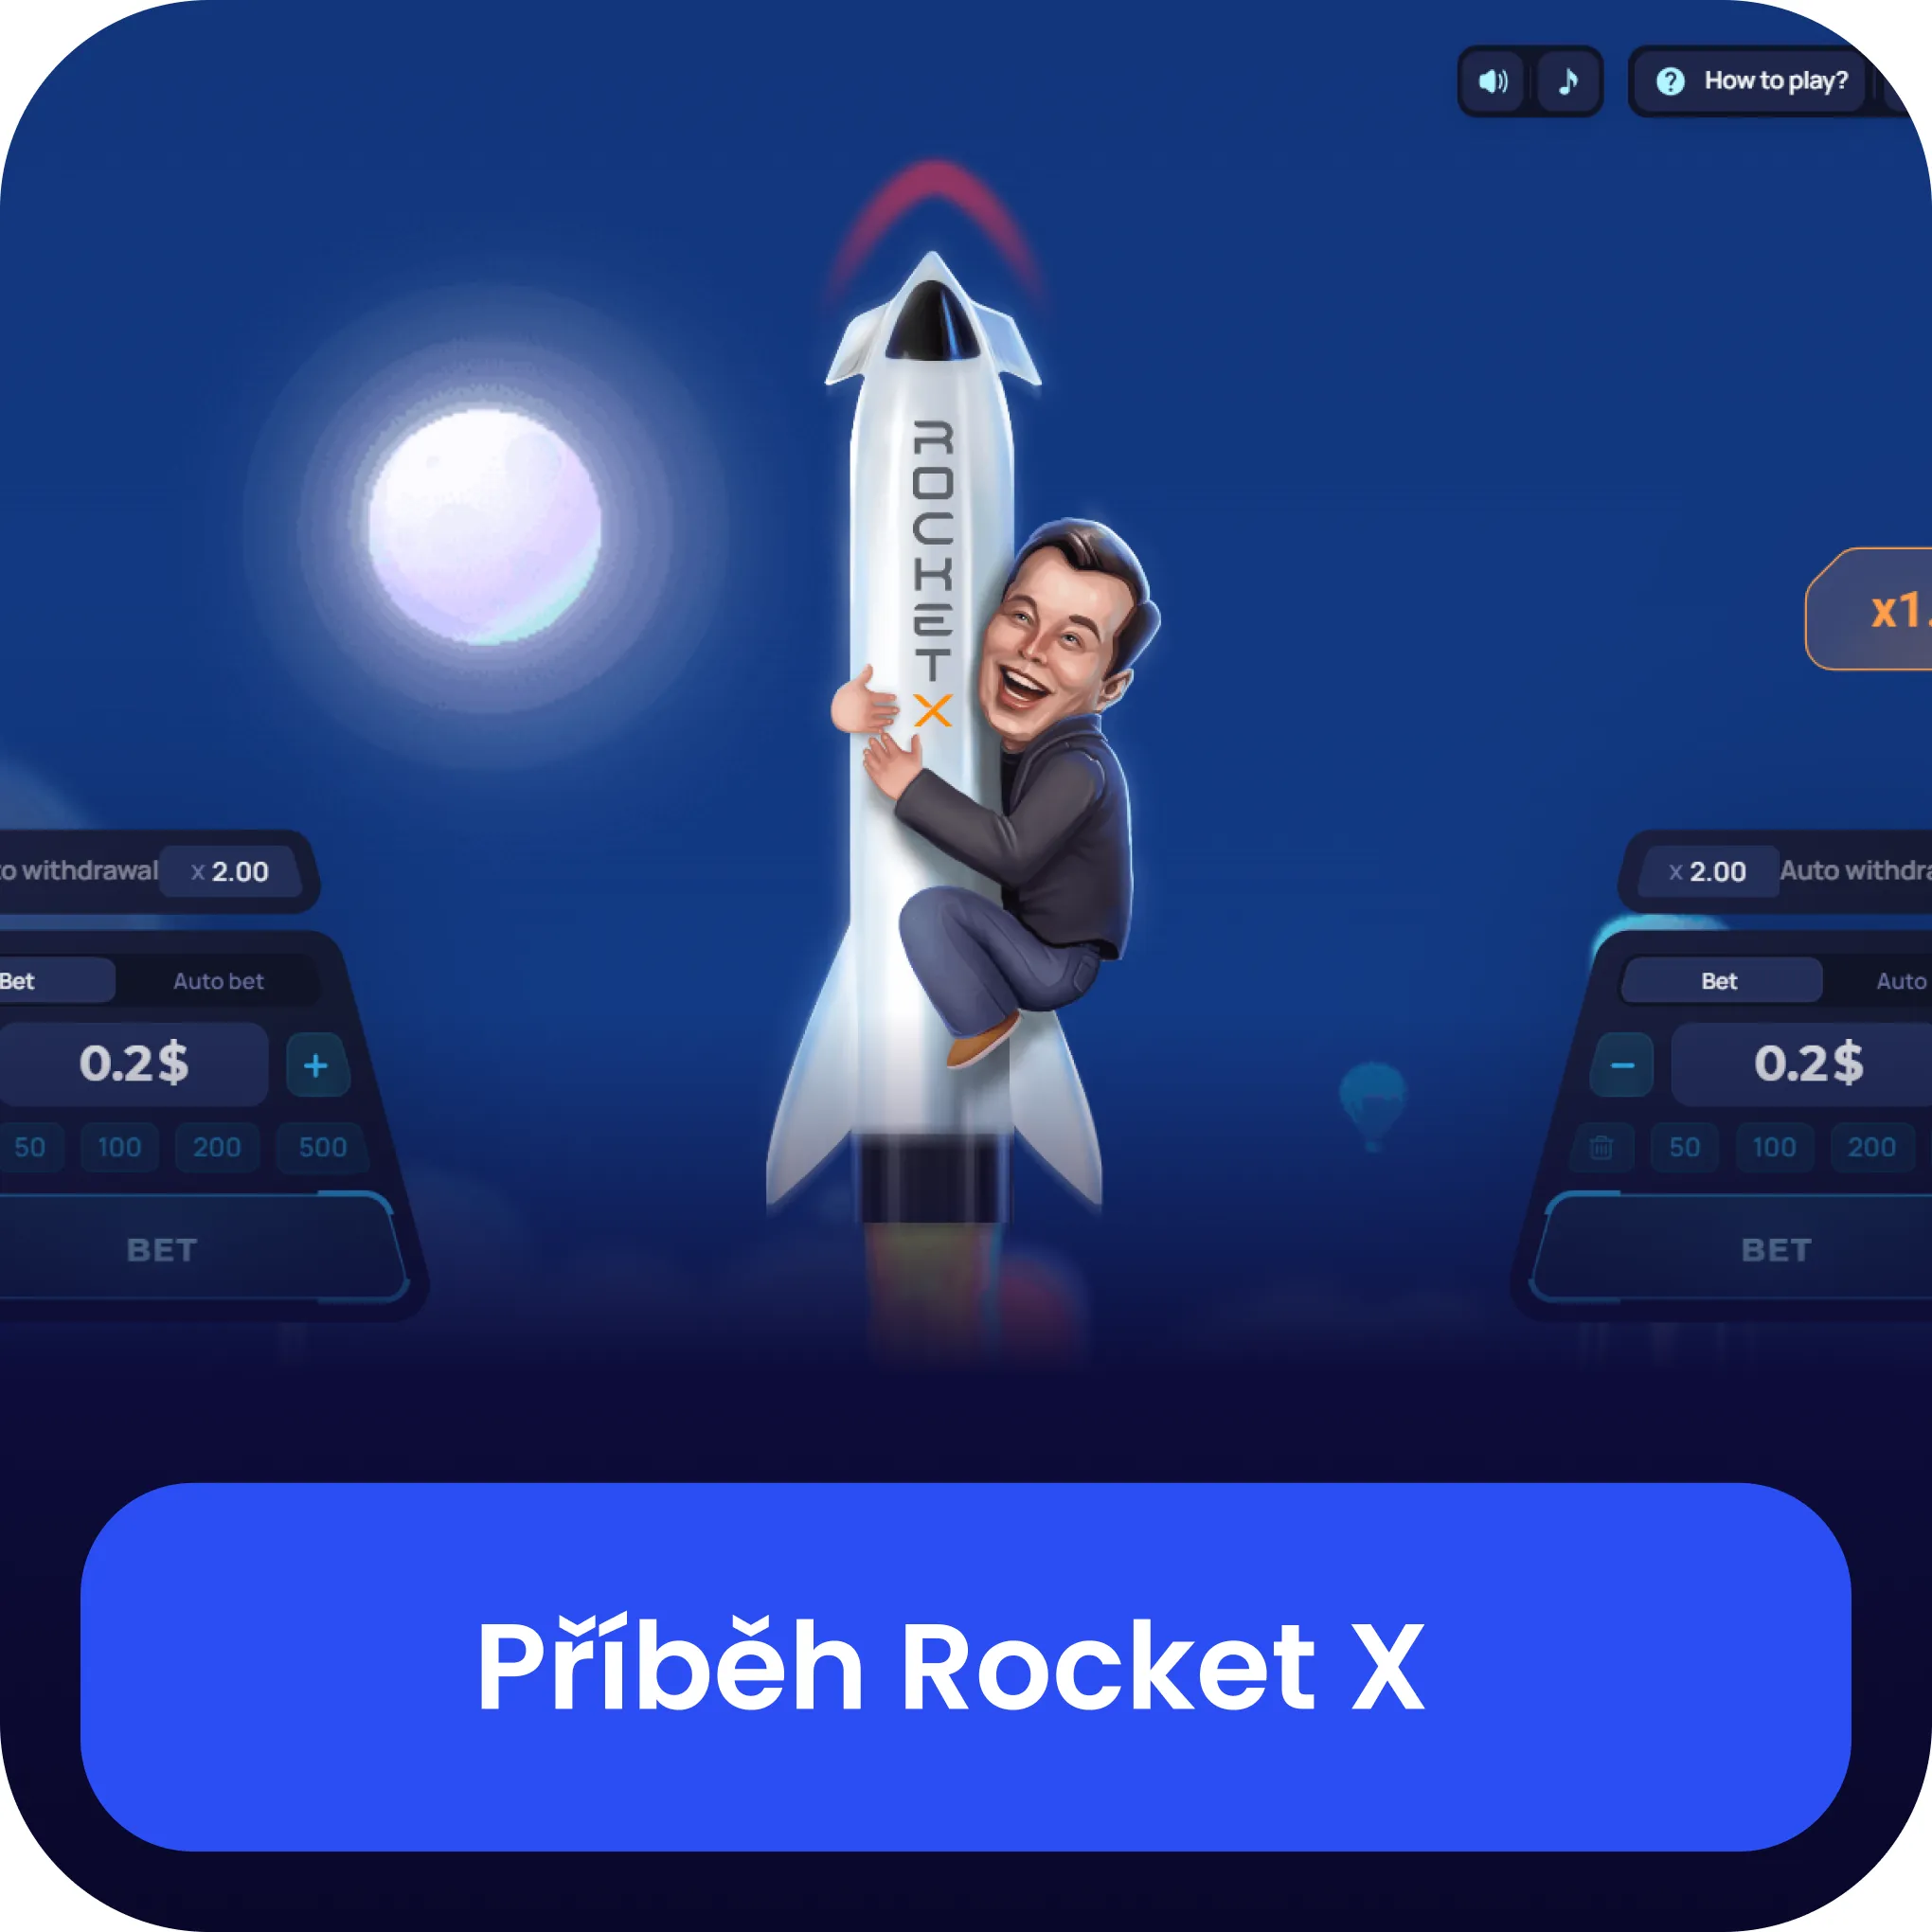 rocket x 1win